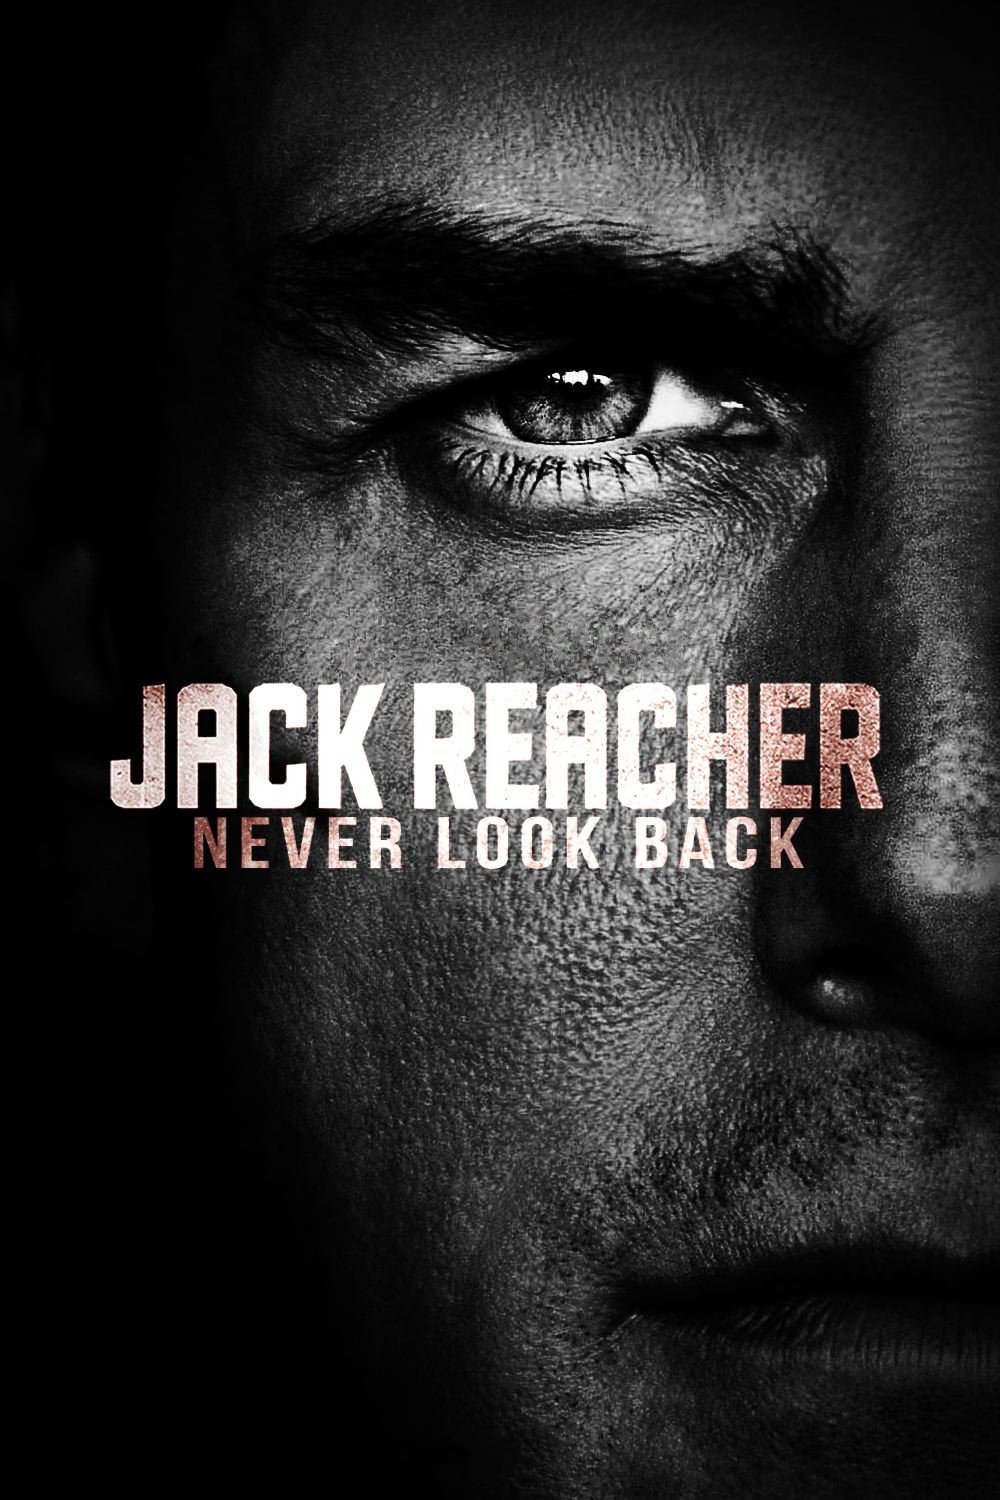 jack reacher 2 online free stream